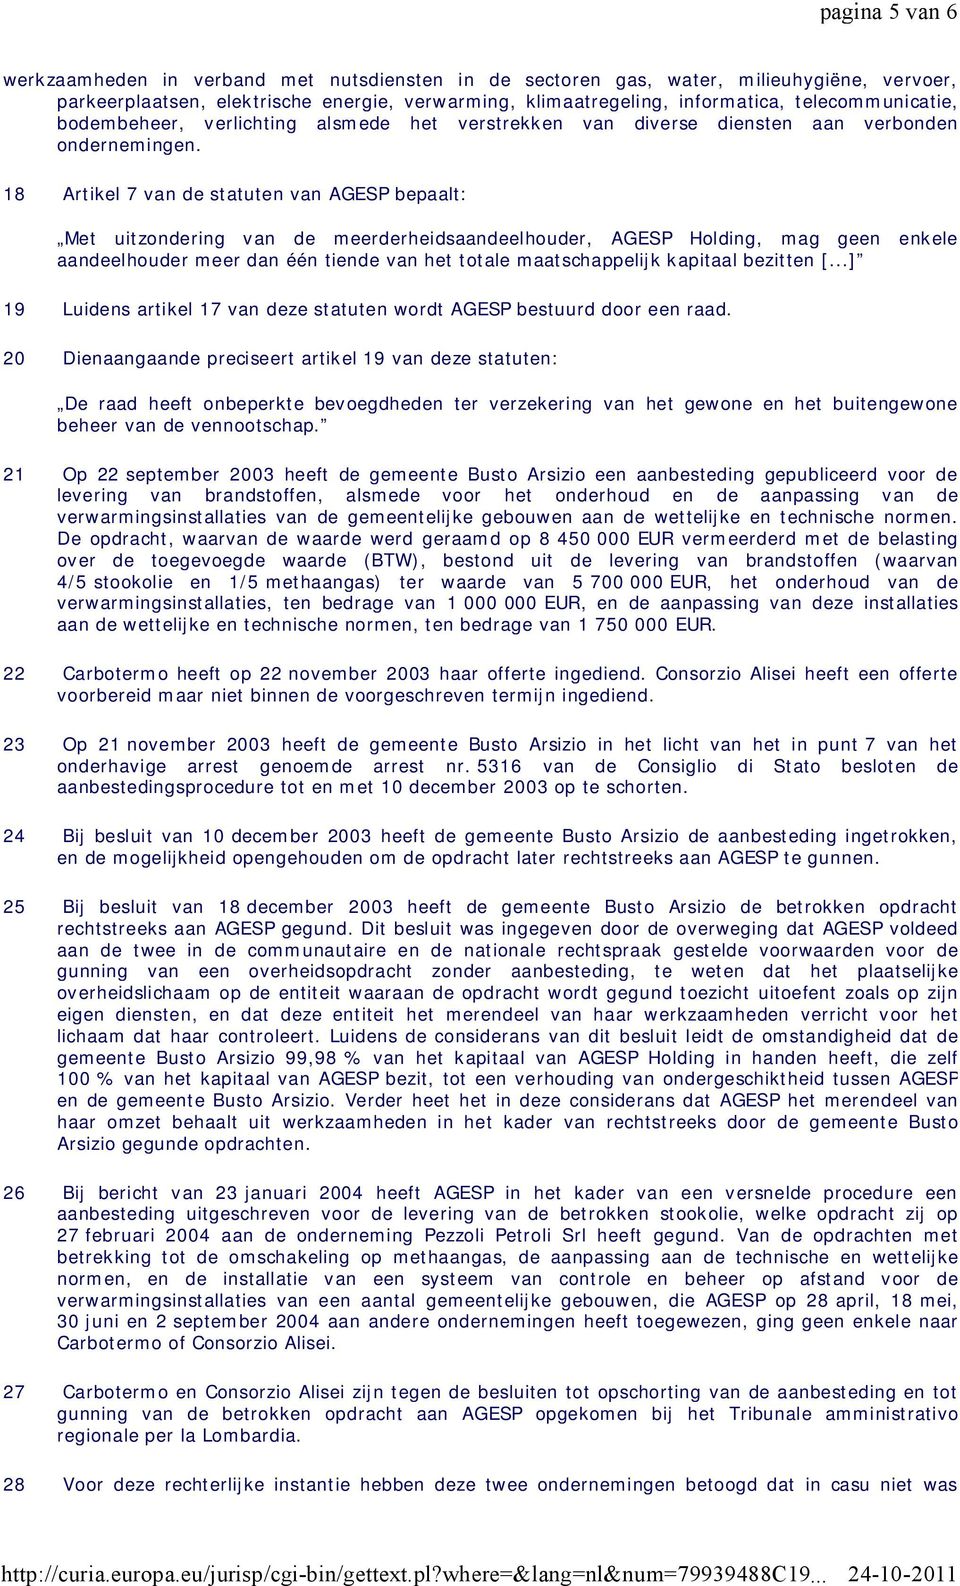 18 Artikel 7 van de statuten van AGESP bepaalt: Met uitzondering van de meerderheidsaandeelhouder, AGESP Holding, mag geen enkele aandeelhouder meer dan één tiende van het totale maatschappelijk